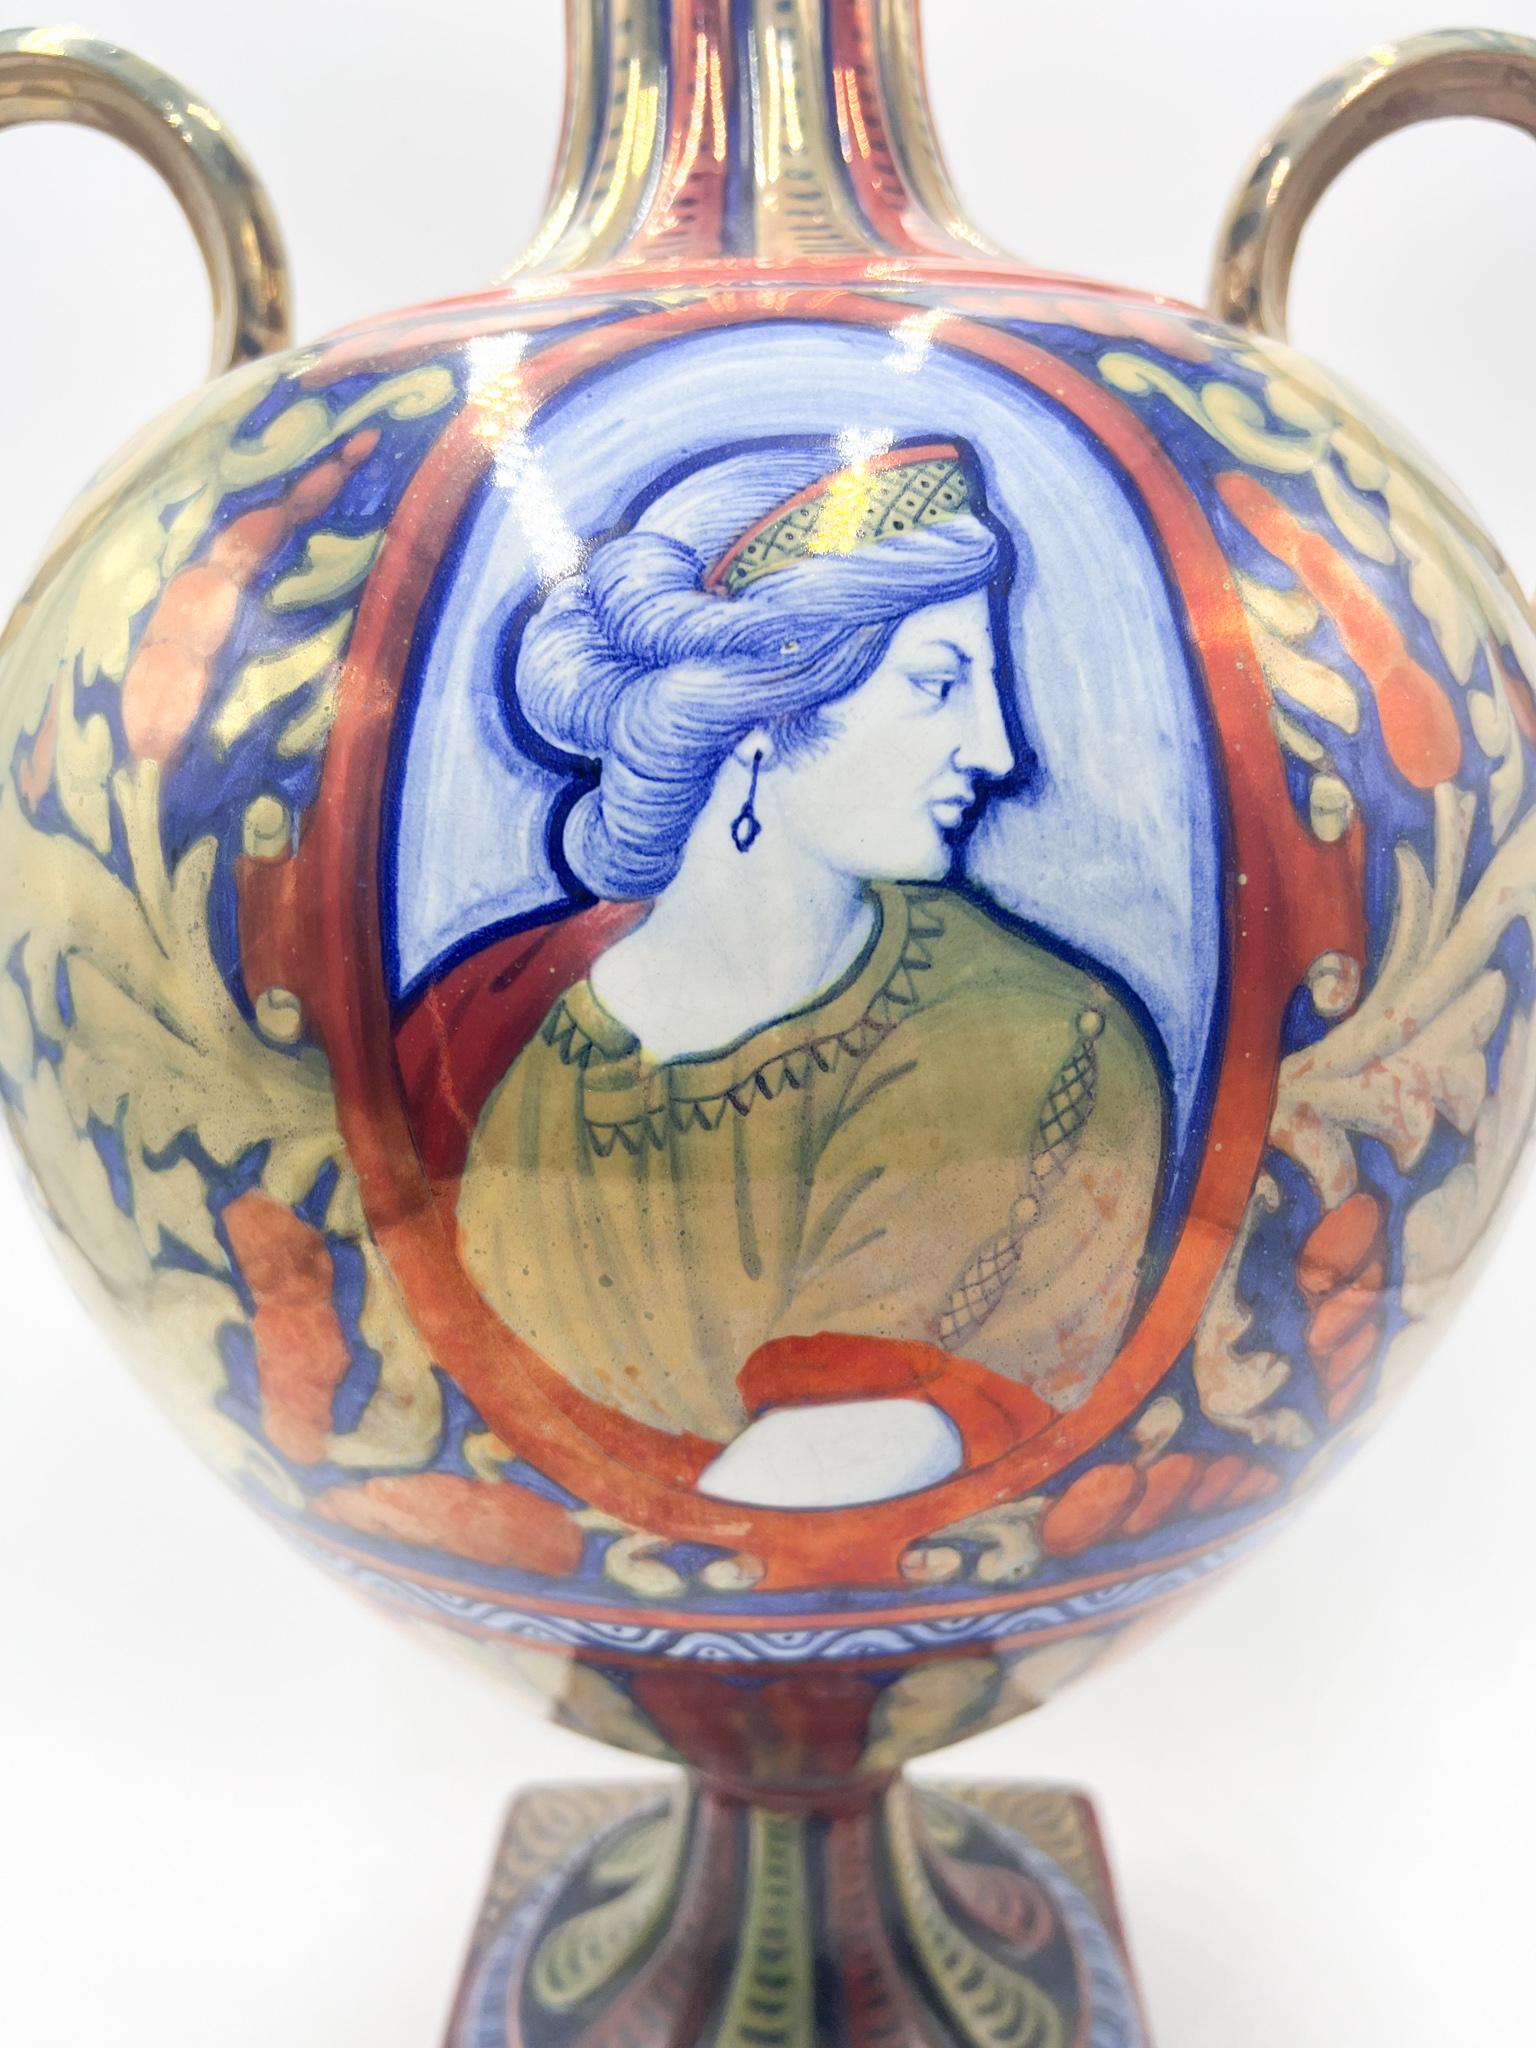 Vase en céramique peint à la main, fabriqué par Gualdo Tadino au début des années 1900

Ø 32 cm Ø 26 cm h 50 cm